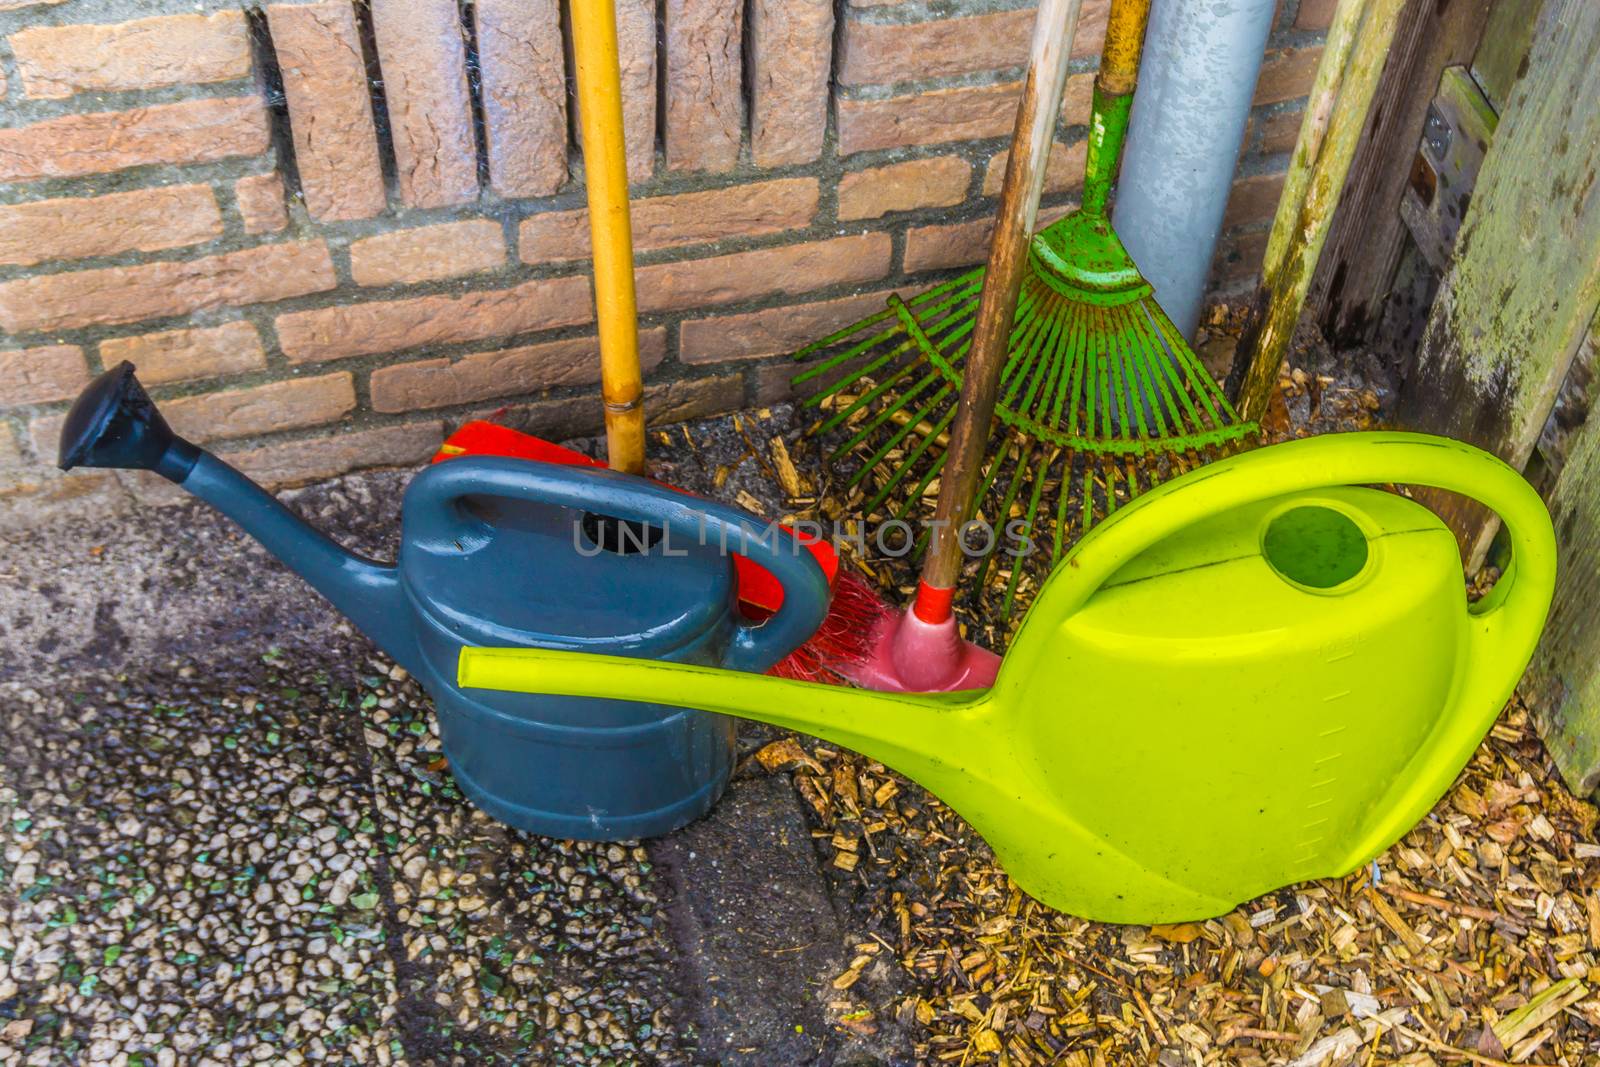 Basic essential gardeners equipment for the home garden by charlottebleijenberg